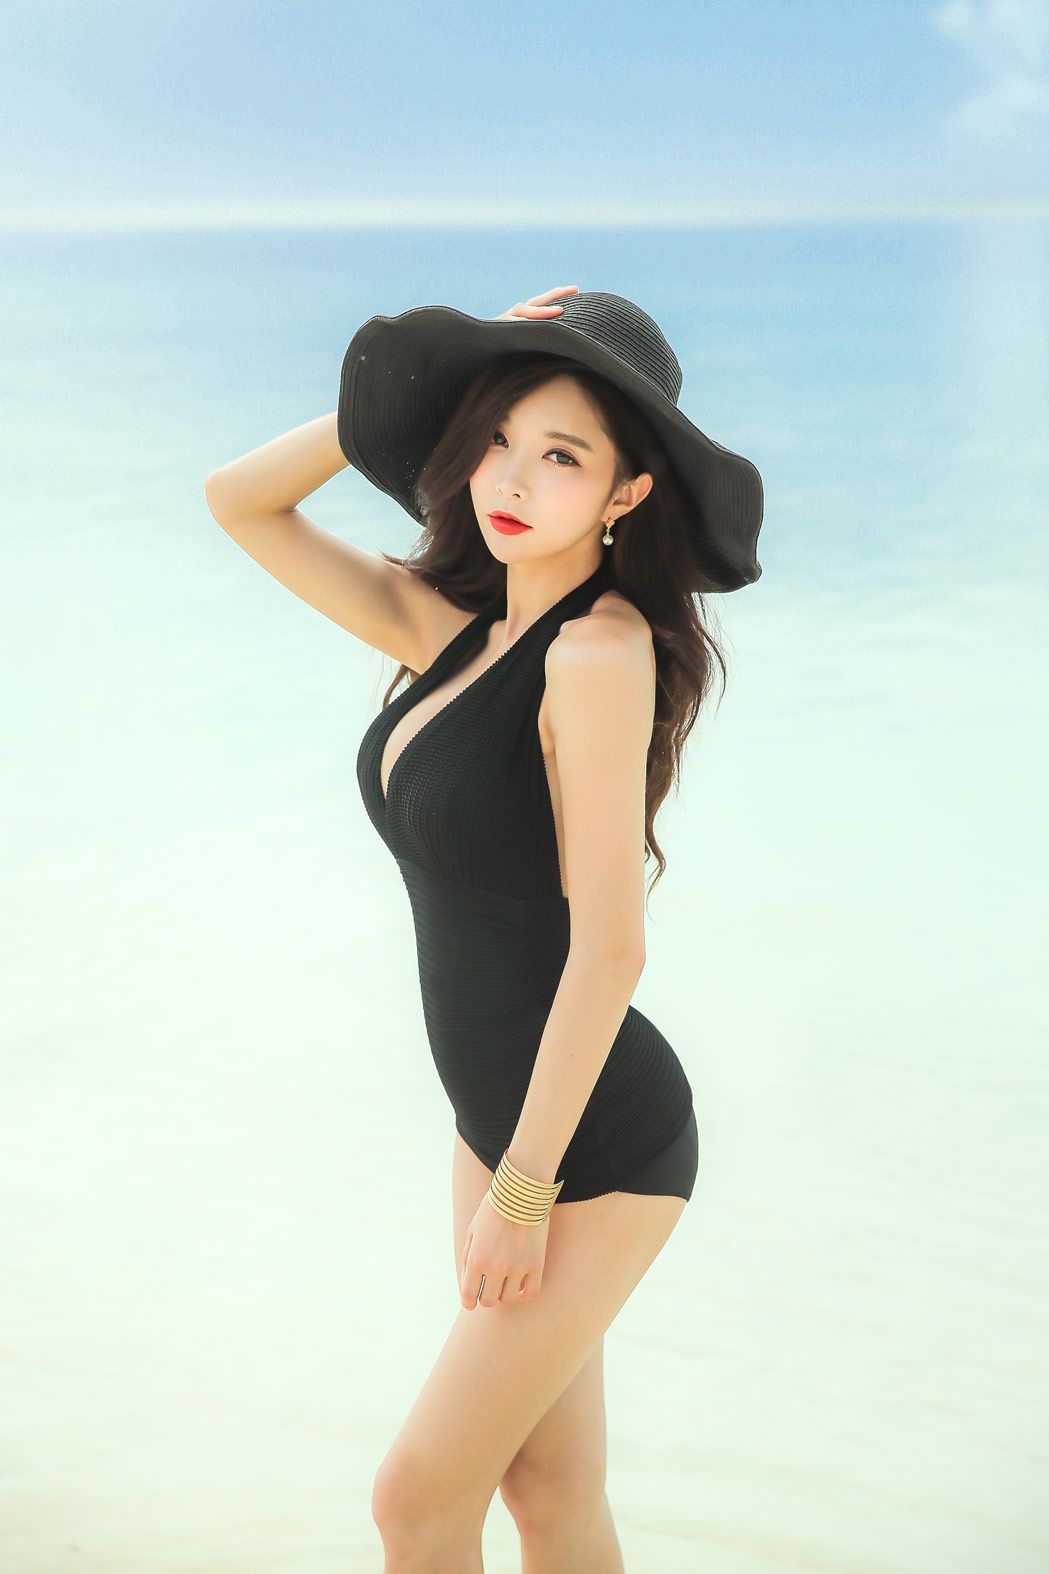 Park Soo Yeon 2017 Bikini Picture and Photo 1